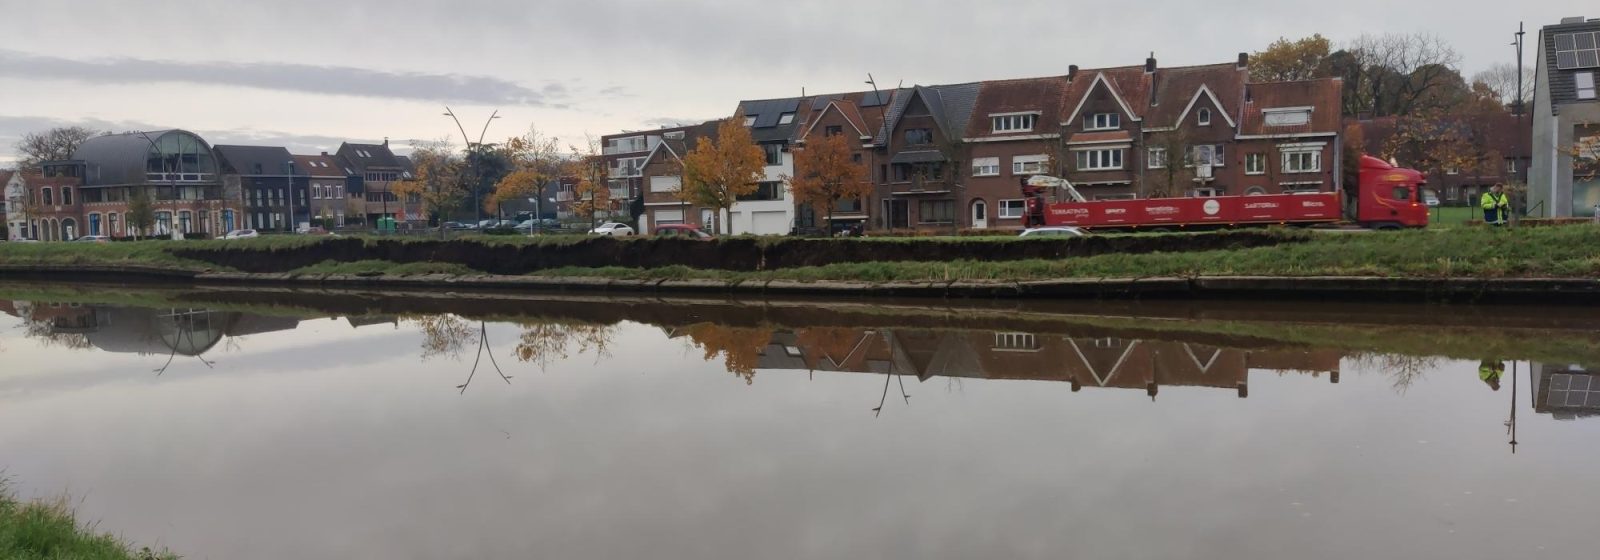 Instorting kanaaloever in Brugge door hoge waterafvoer